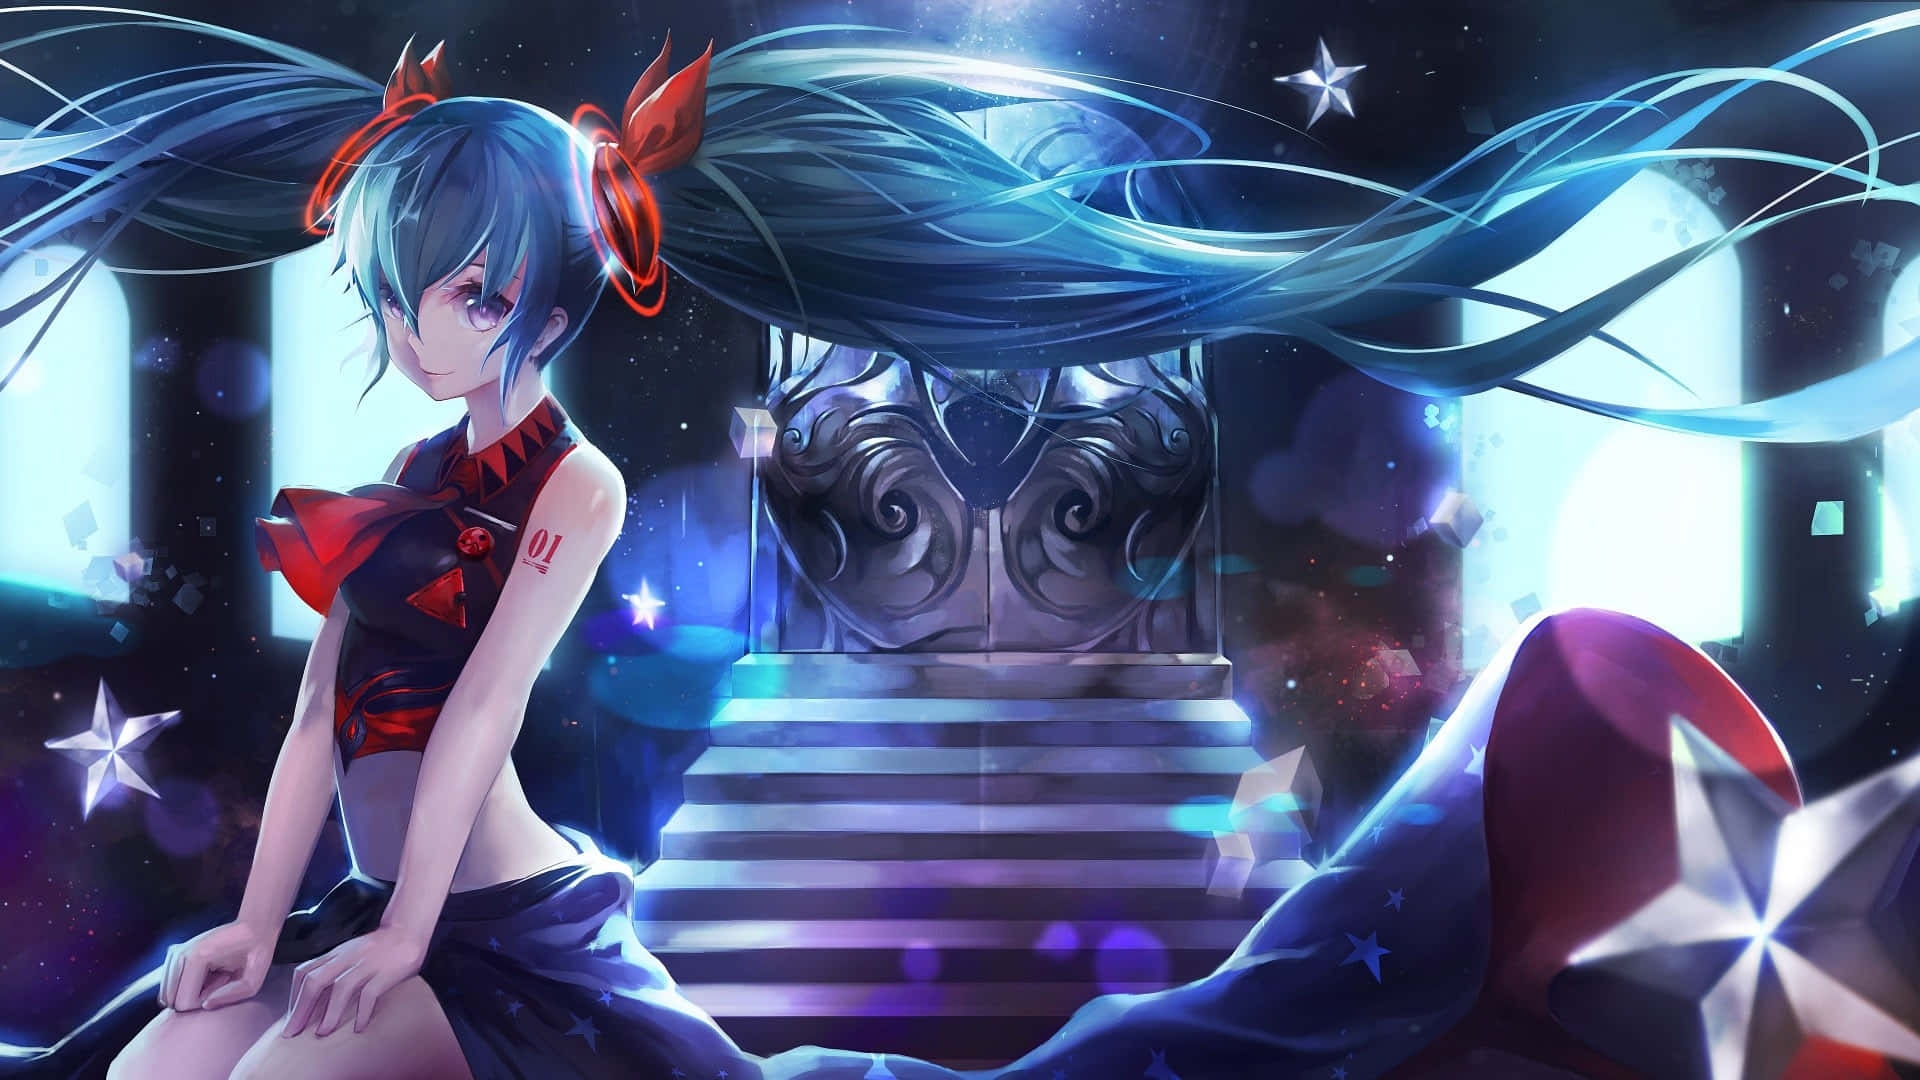 Mitihren Charakteristischen Blauen Zöpfen Verzaubert Miku Hatsune Mit Selbstbewusstsein Und Anmut An Diesem Sternklaren Abend.